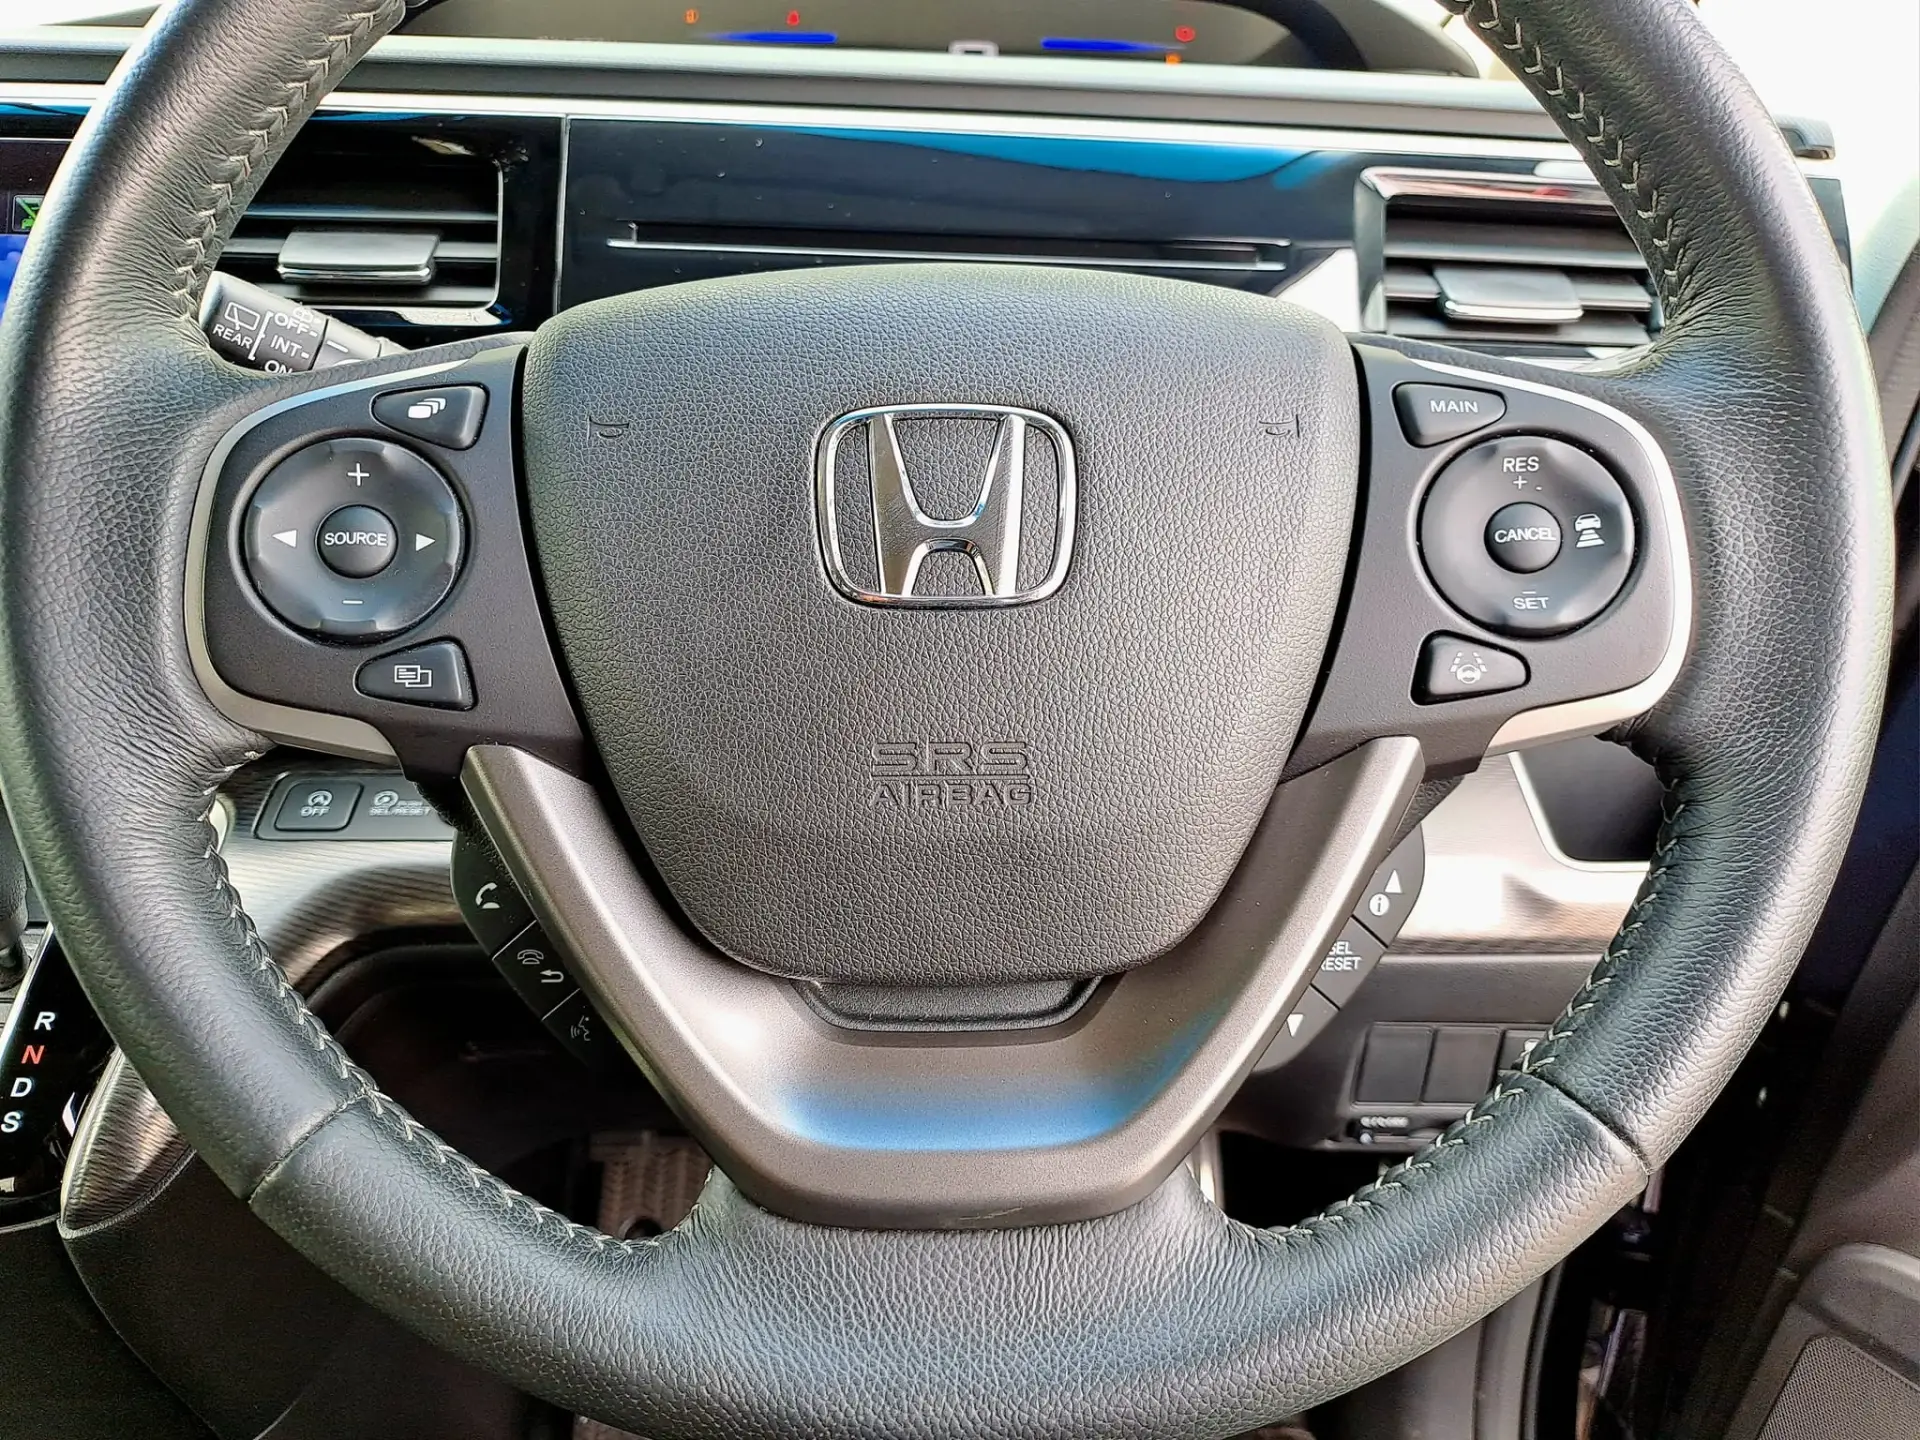 Honda Stepwagon for Sale in Nairobi

